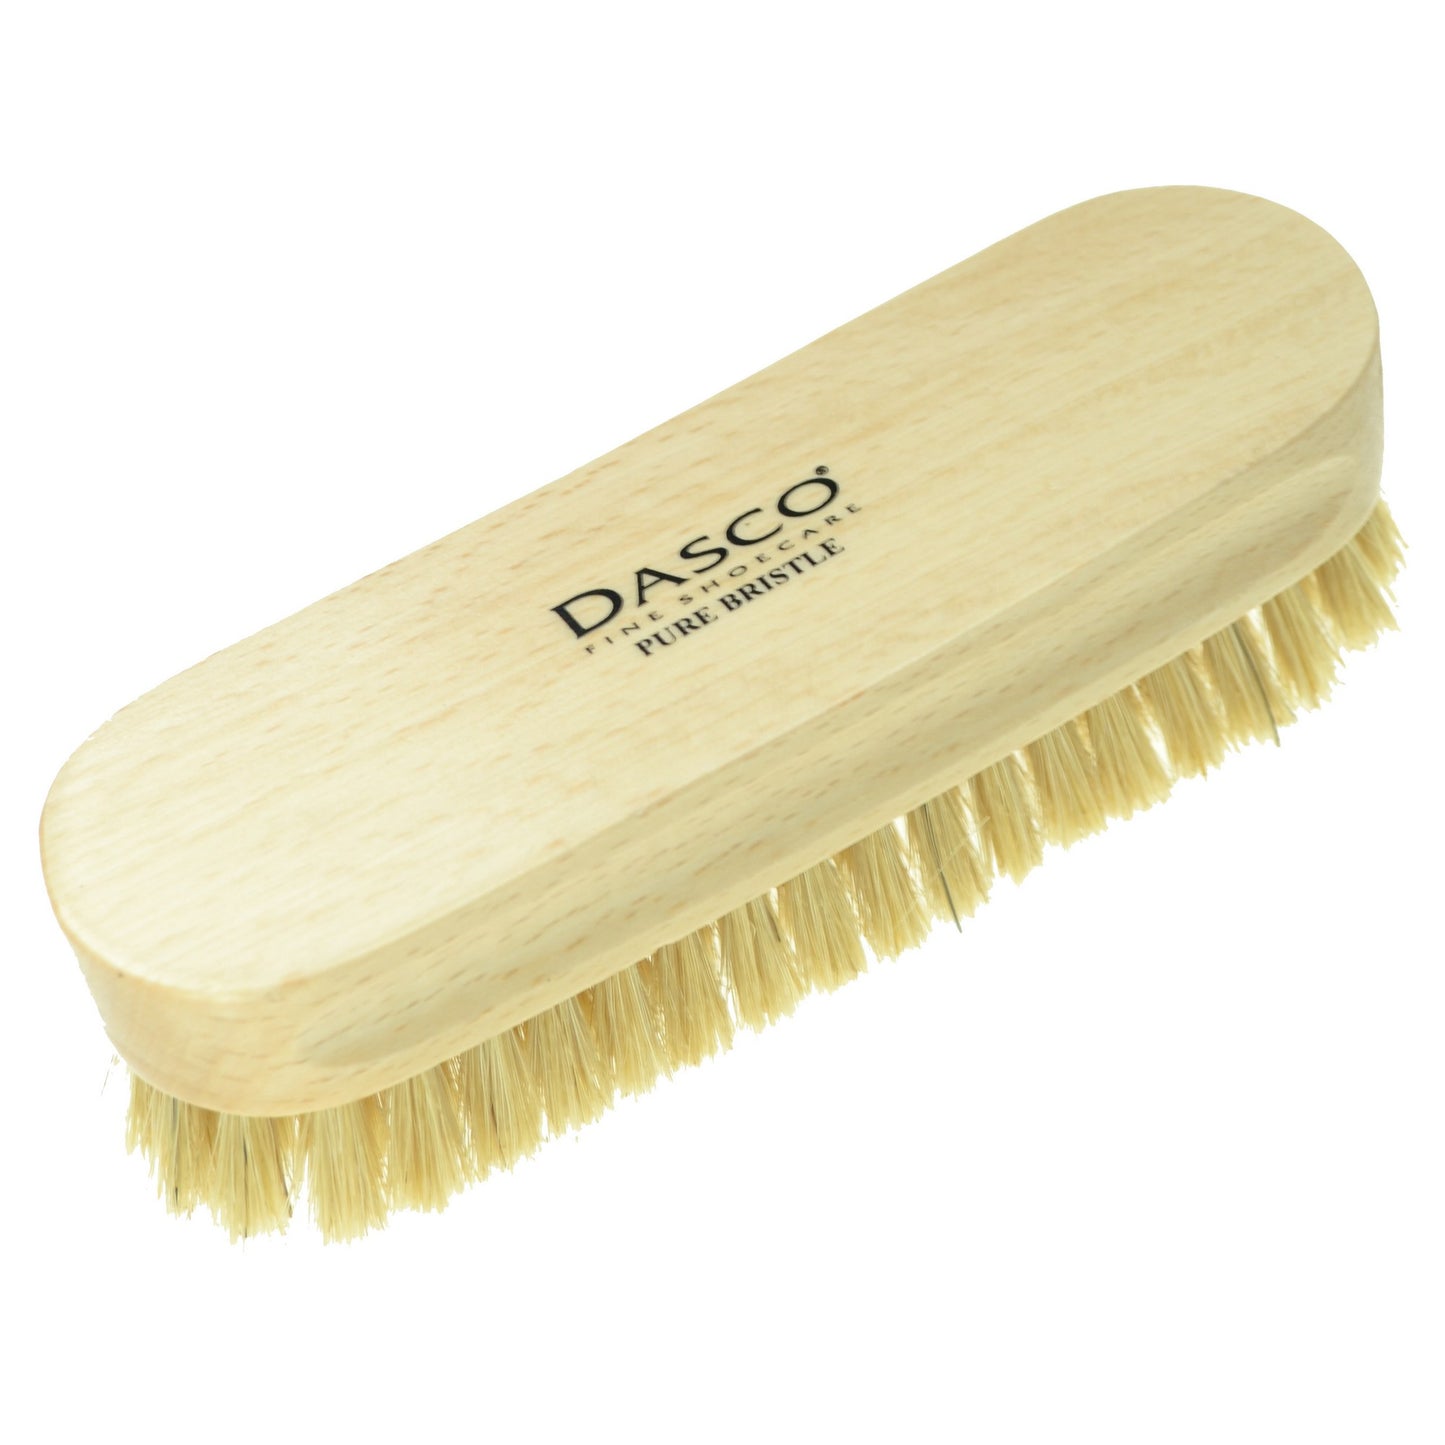 Dasco Small Bristle Brush - Grey